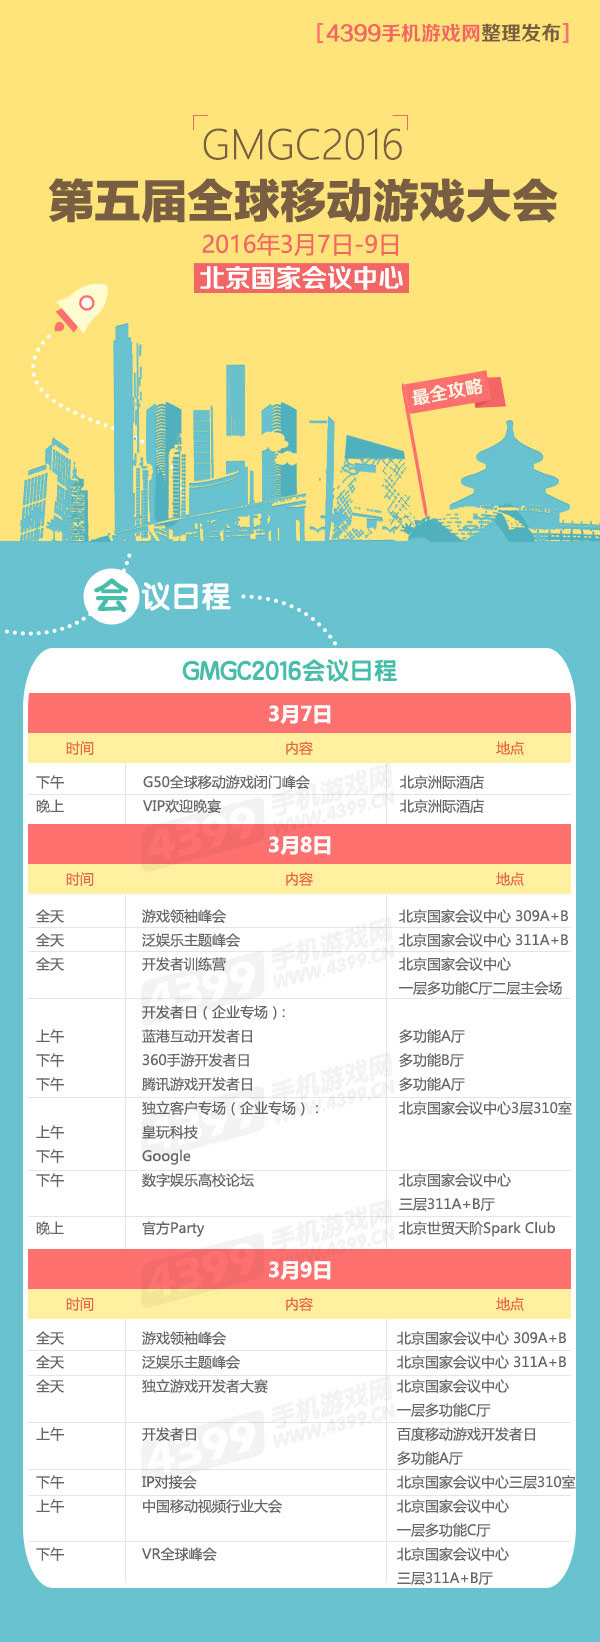 GMGC2016会议日程